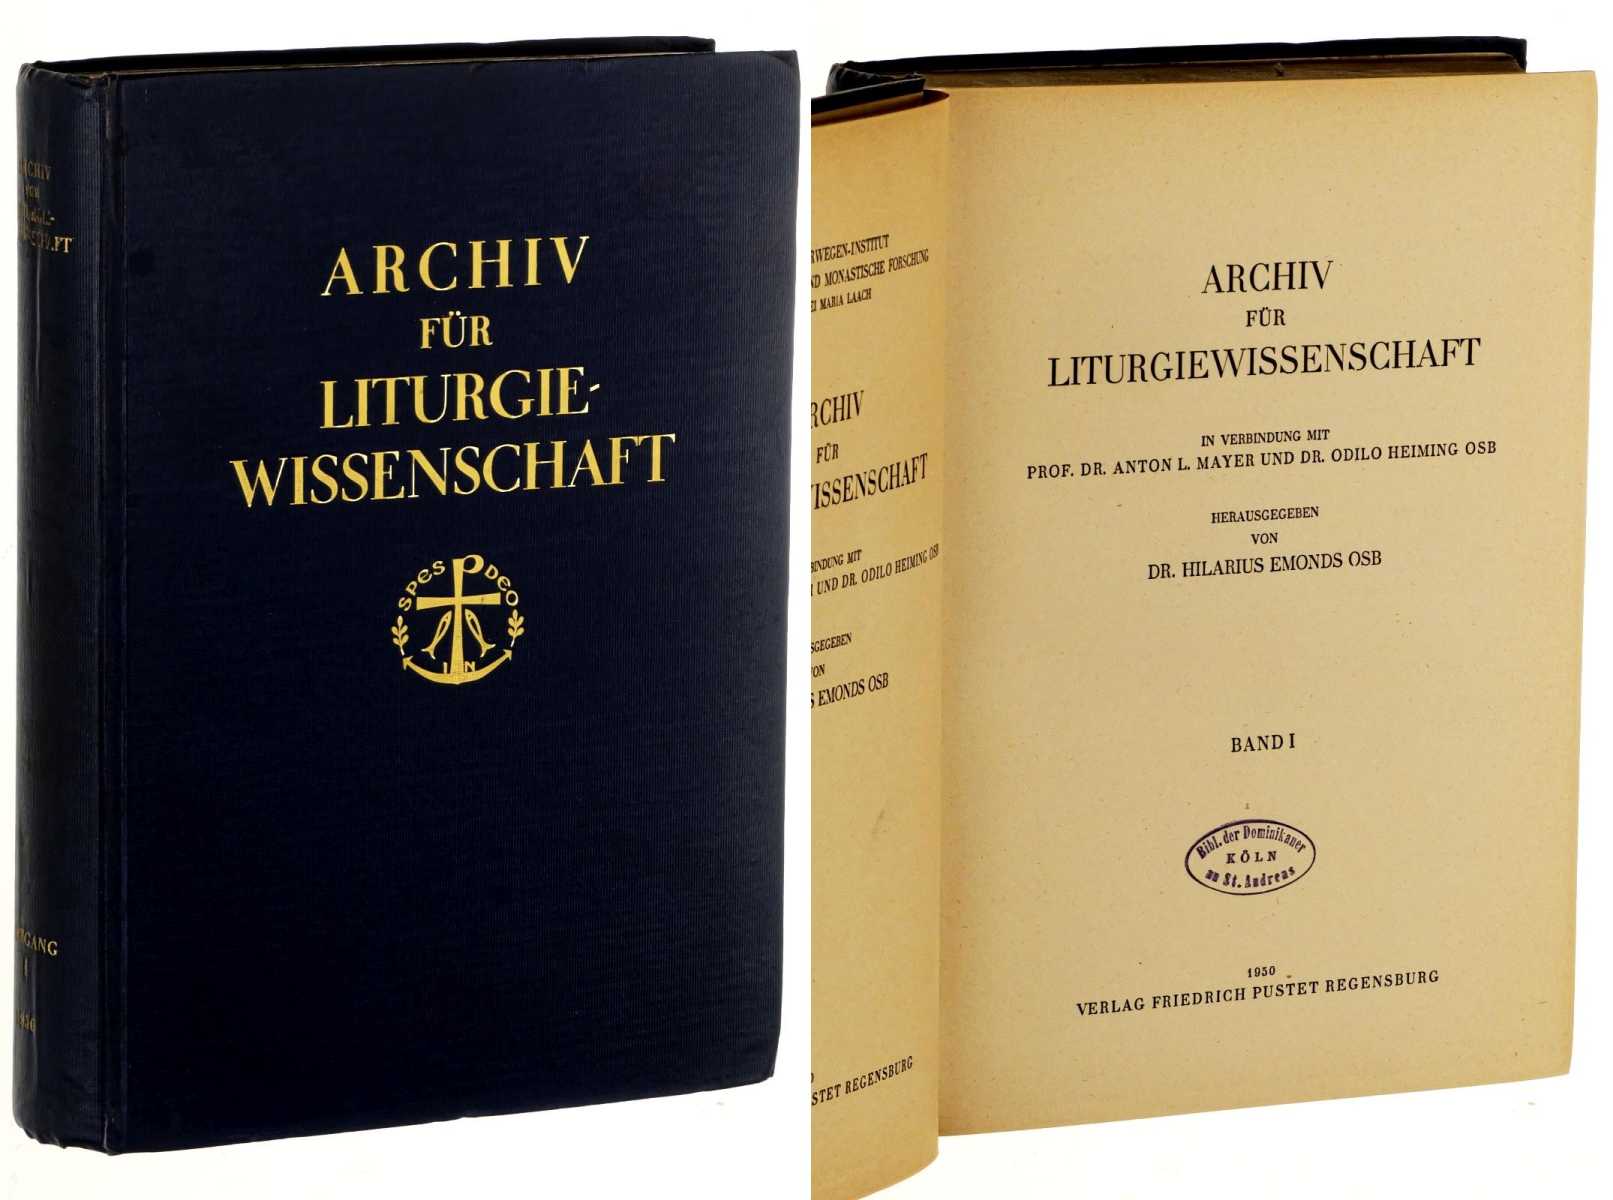   Archiv für Liturgiewissenschaft. Hrsg. von Hilarius Emonds OSB. 